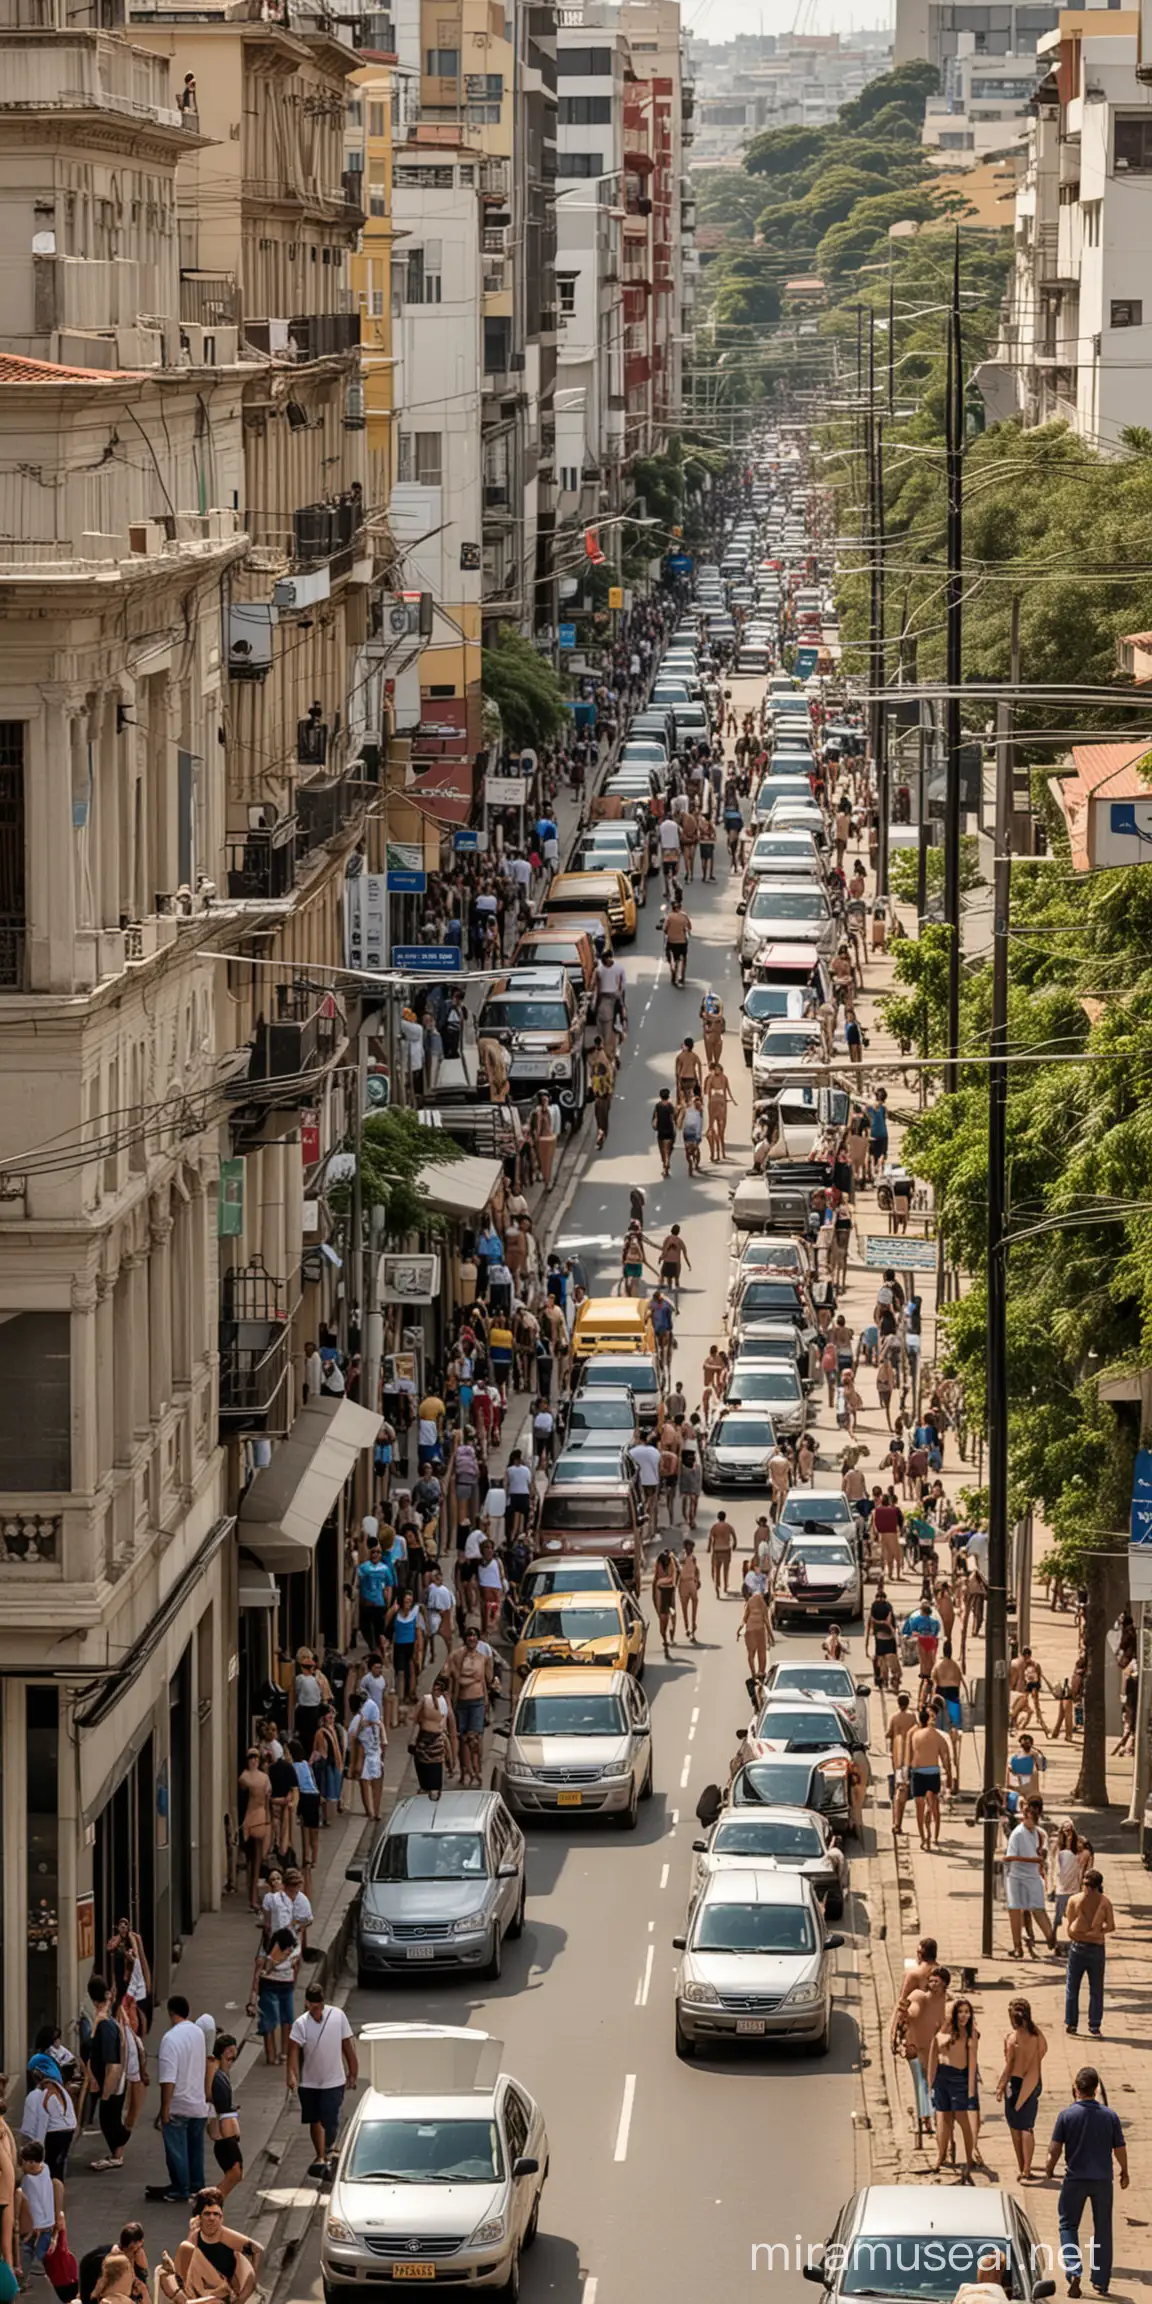 Rua movimentada do centro de Porto Alegre, no estado do Rio Grande do Sul, Brasil, com carros e pessoas de várias idades a pé, todas nuas.